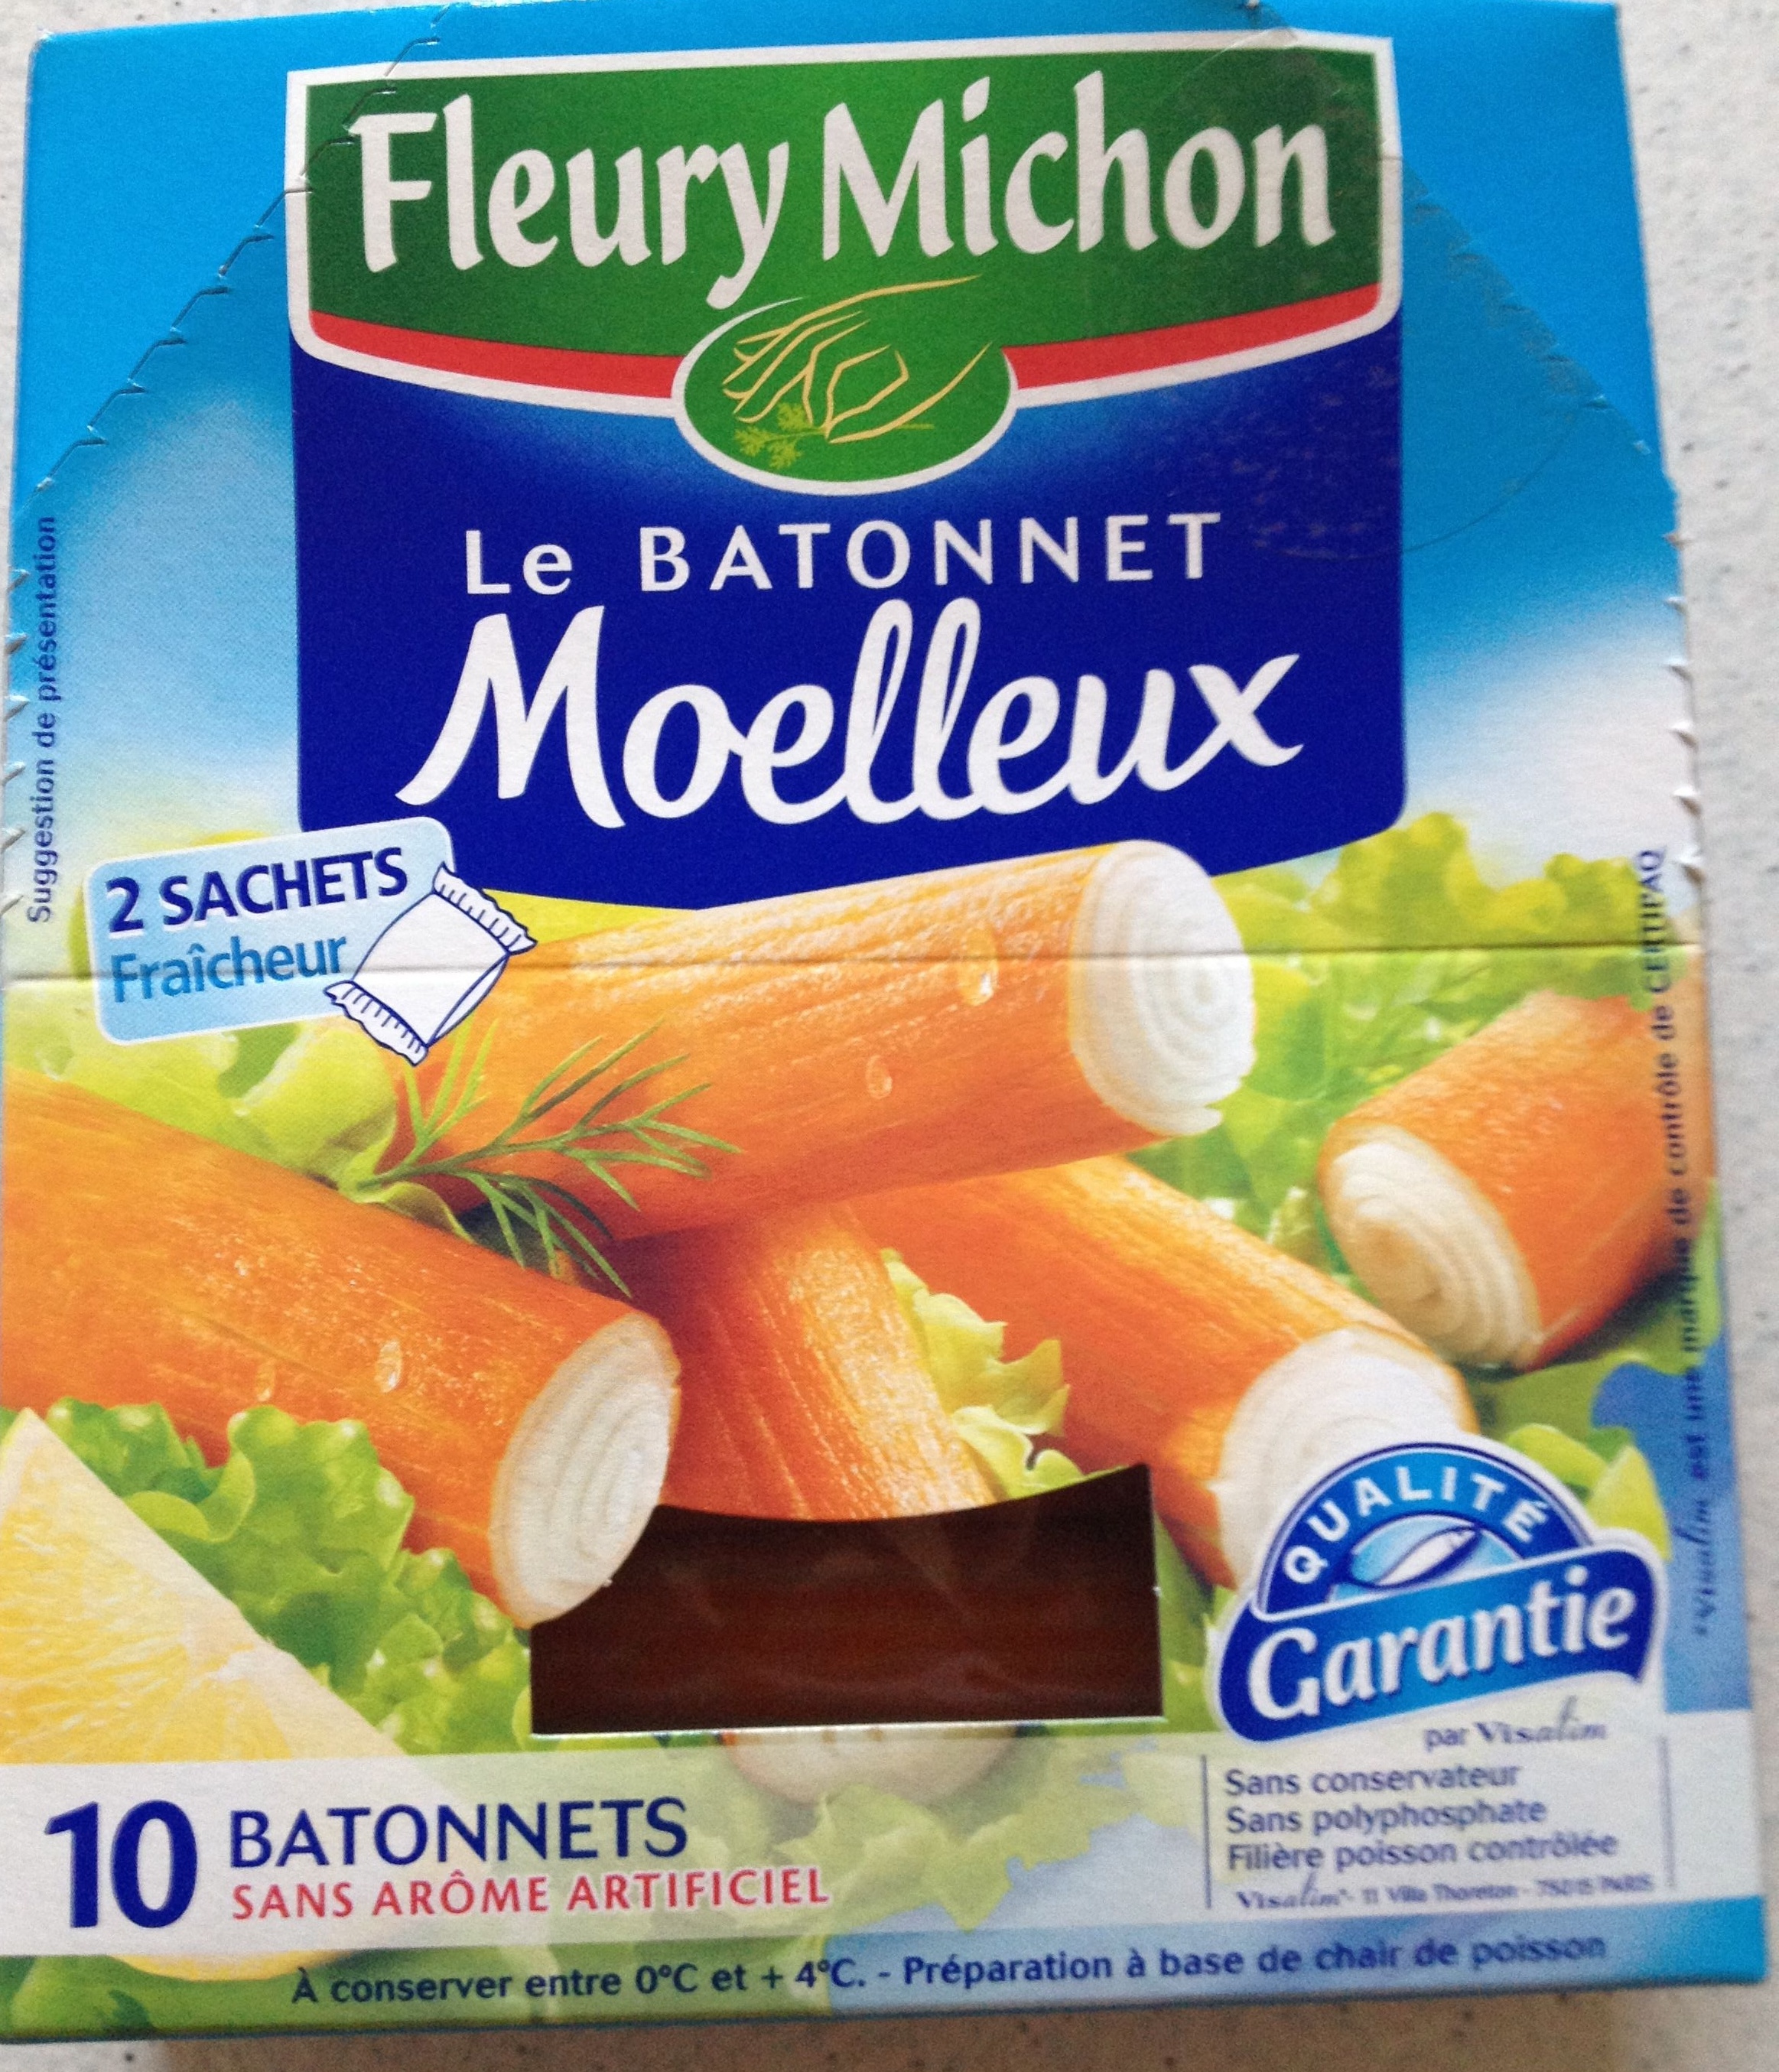 Le Bâtonnet Moelleux (10 Bâtonnets) - Product - fr